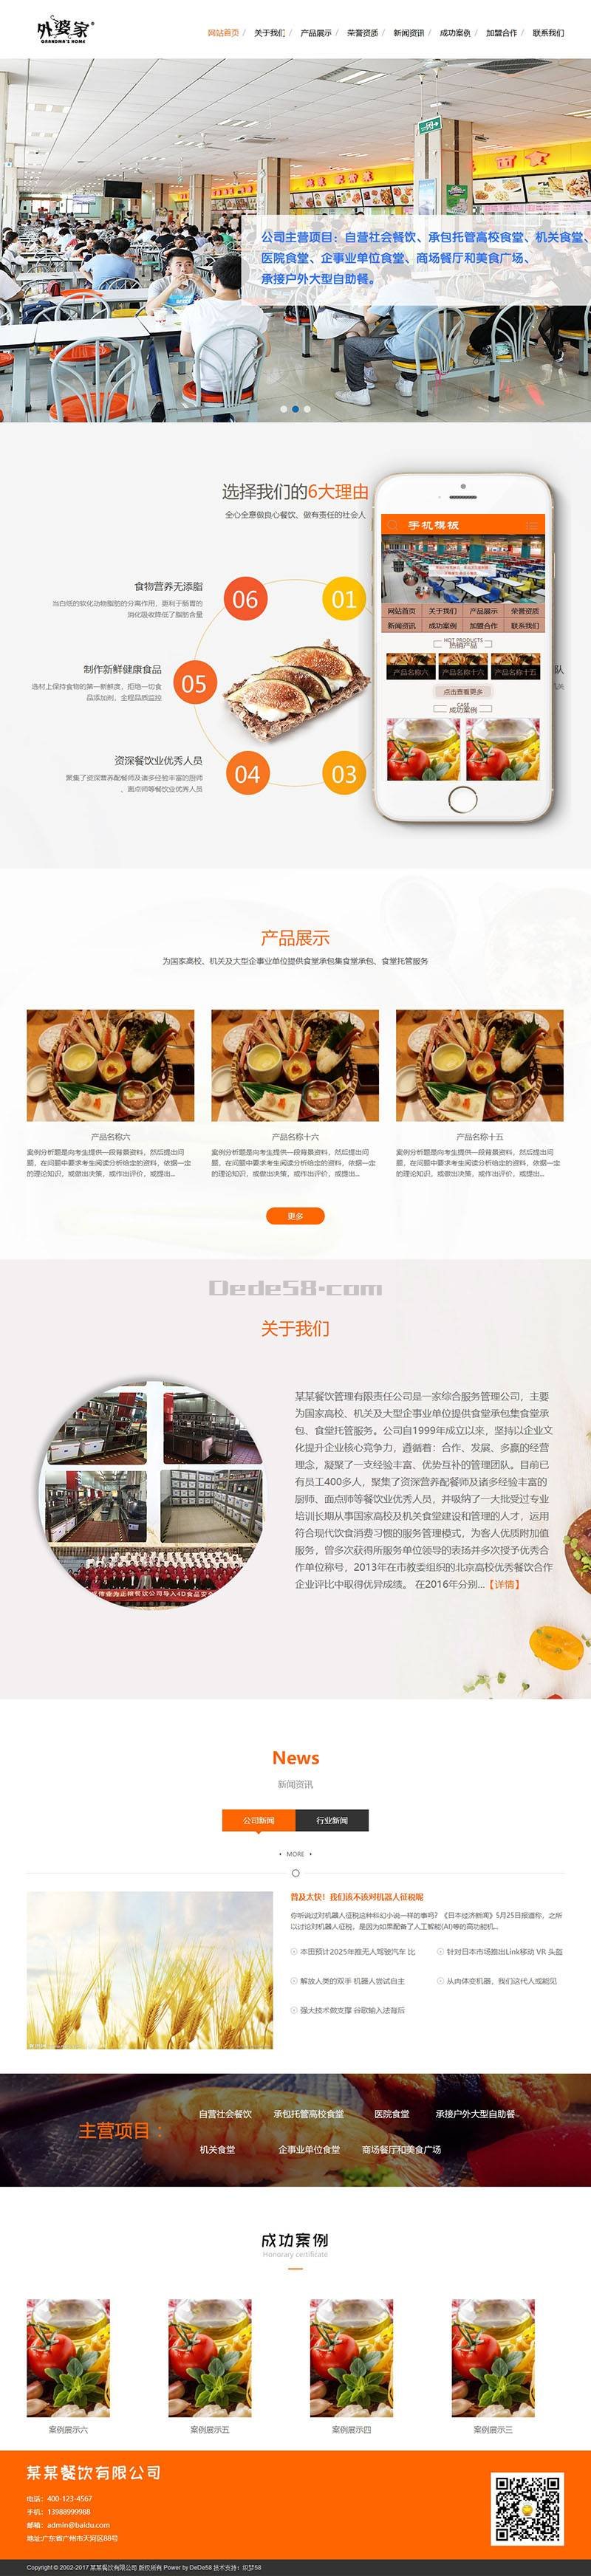 食堂承包餐饮服务管理类网站织梦模板(带手机端)